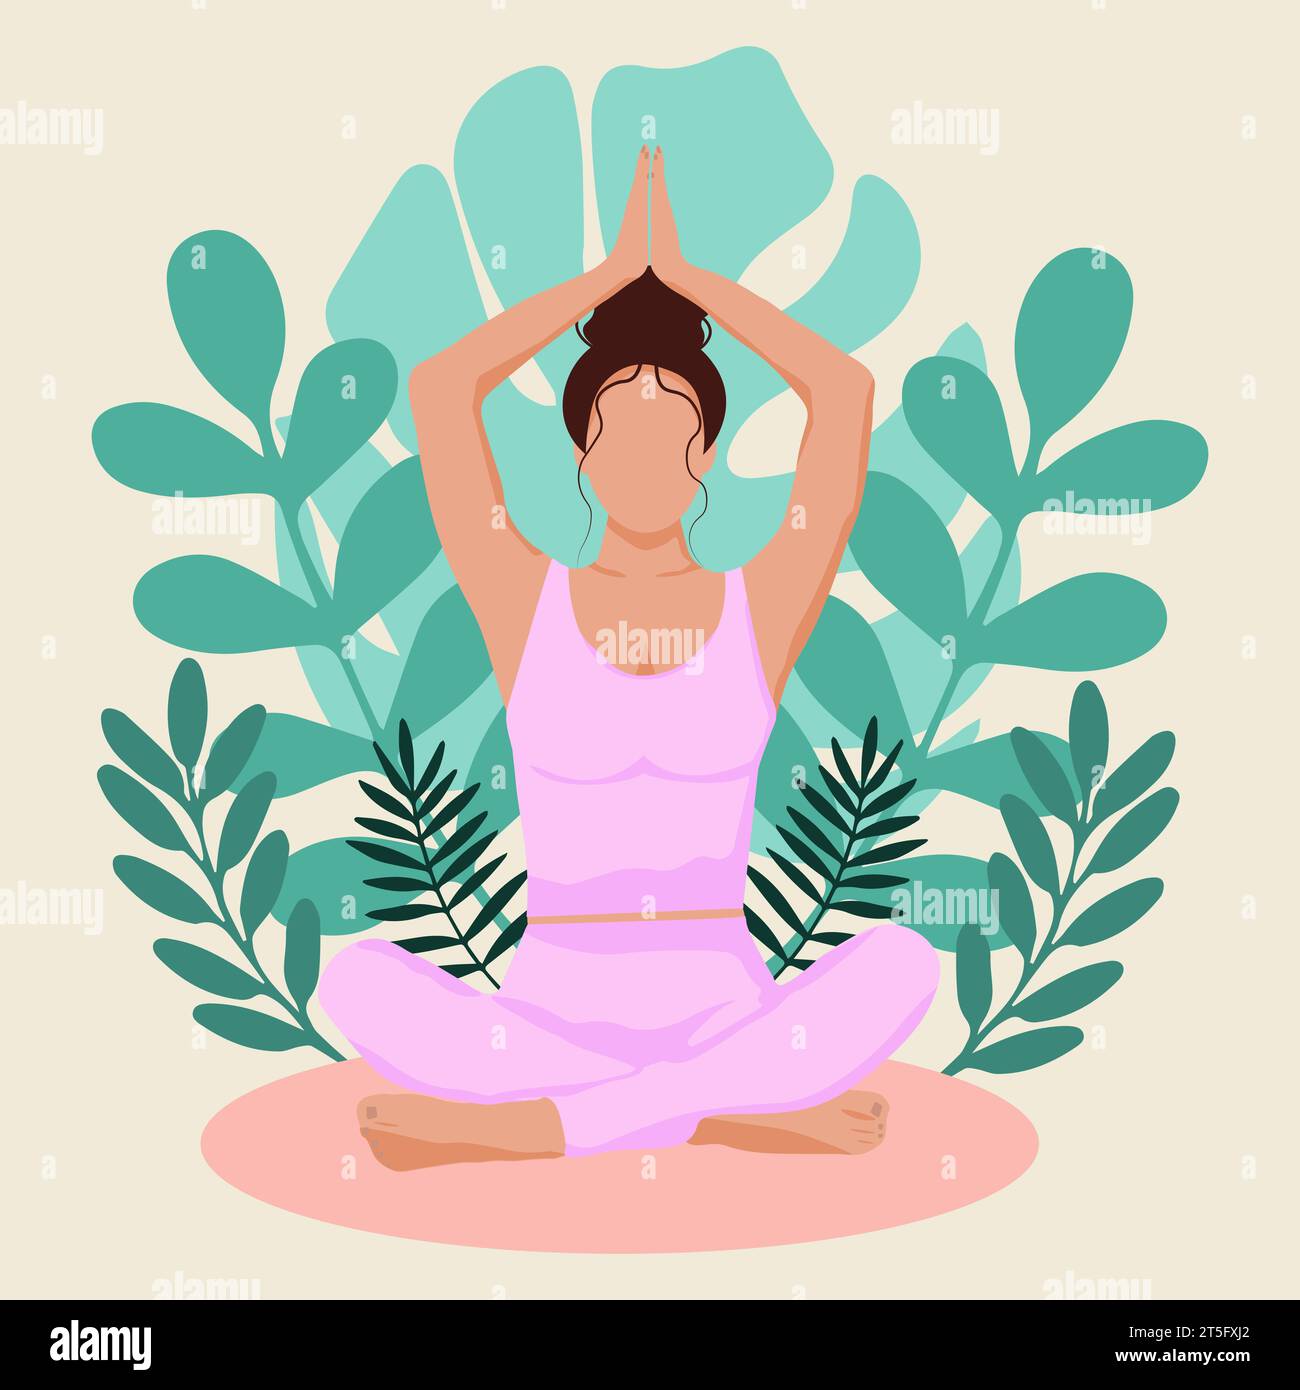 Donna che medita in natura e se ne va. Illustrazione concettuale per yoga, meditazione, relax, ricreazione, stile di vita sano. Illustrazione vettoriale Illustrazione Vettoriale